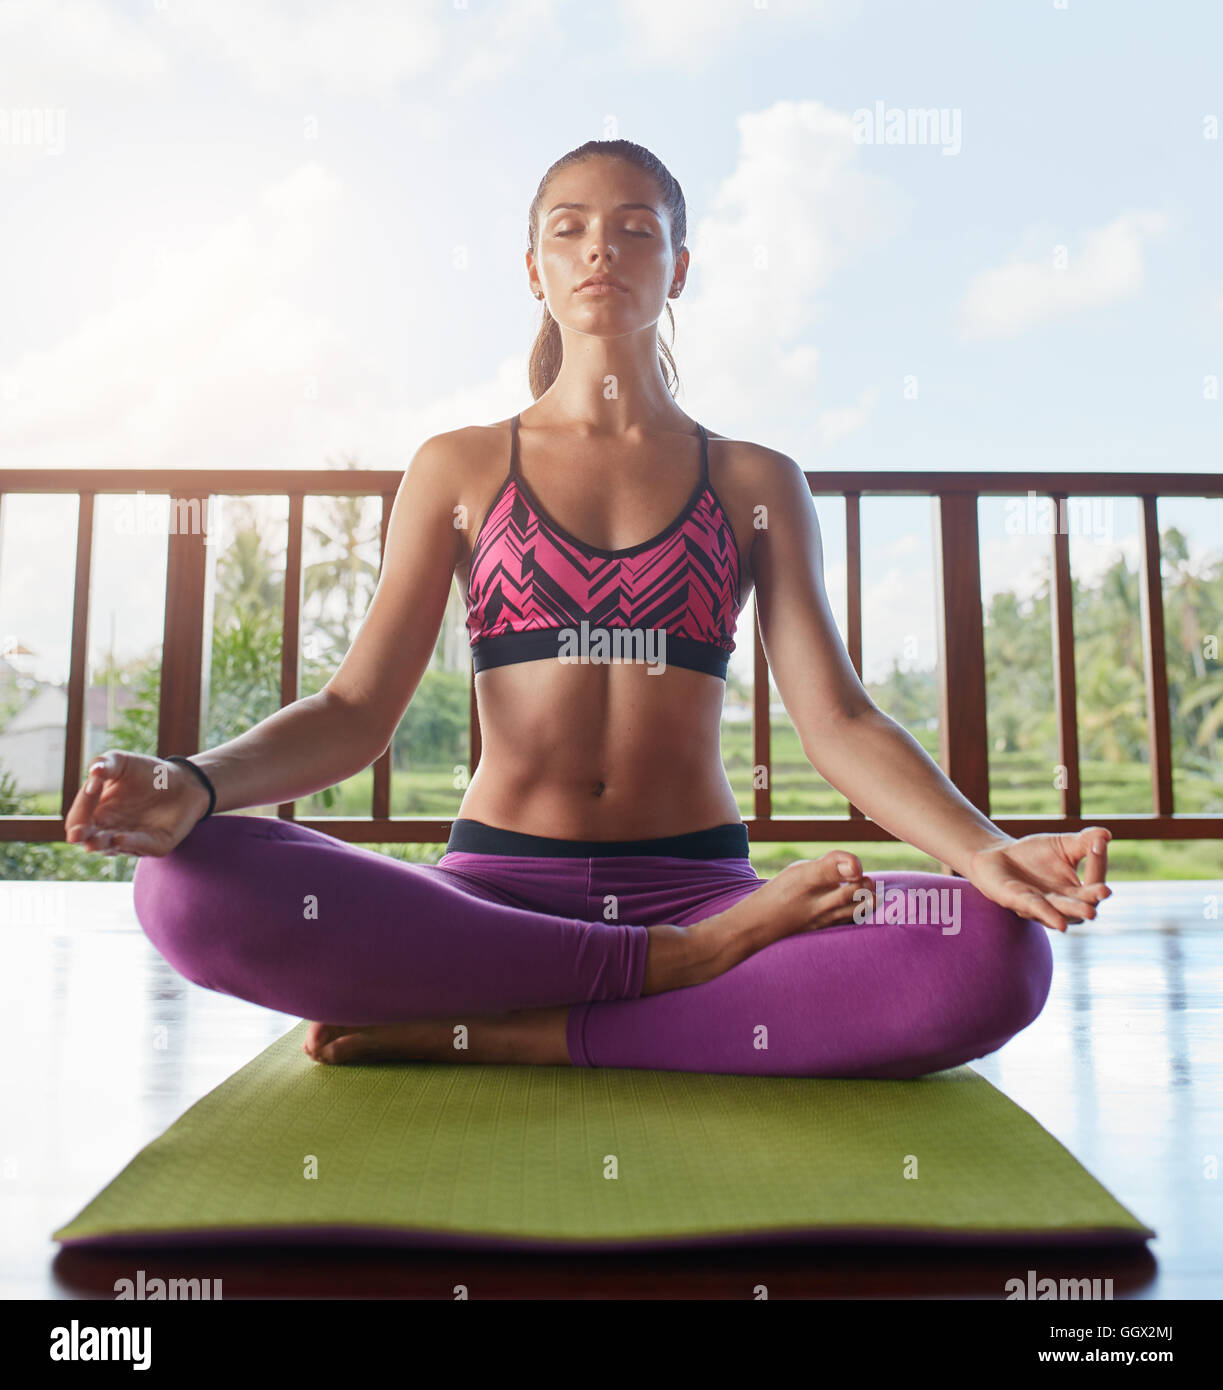 Junge Frau, die auf dem Boden sitzt, in Yoga-Pose mit Händen auf den Knien, Lotus-Pose. Fitness-weibliches Modell, das Yoga-Meditation macht. Stockfoto